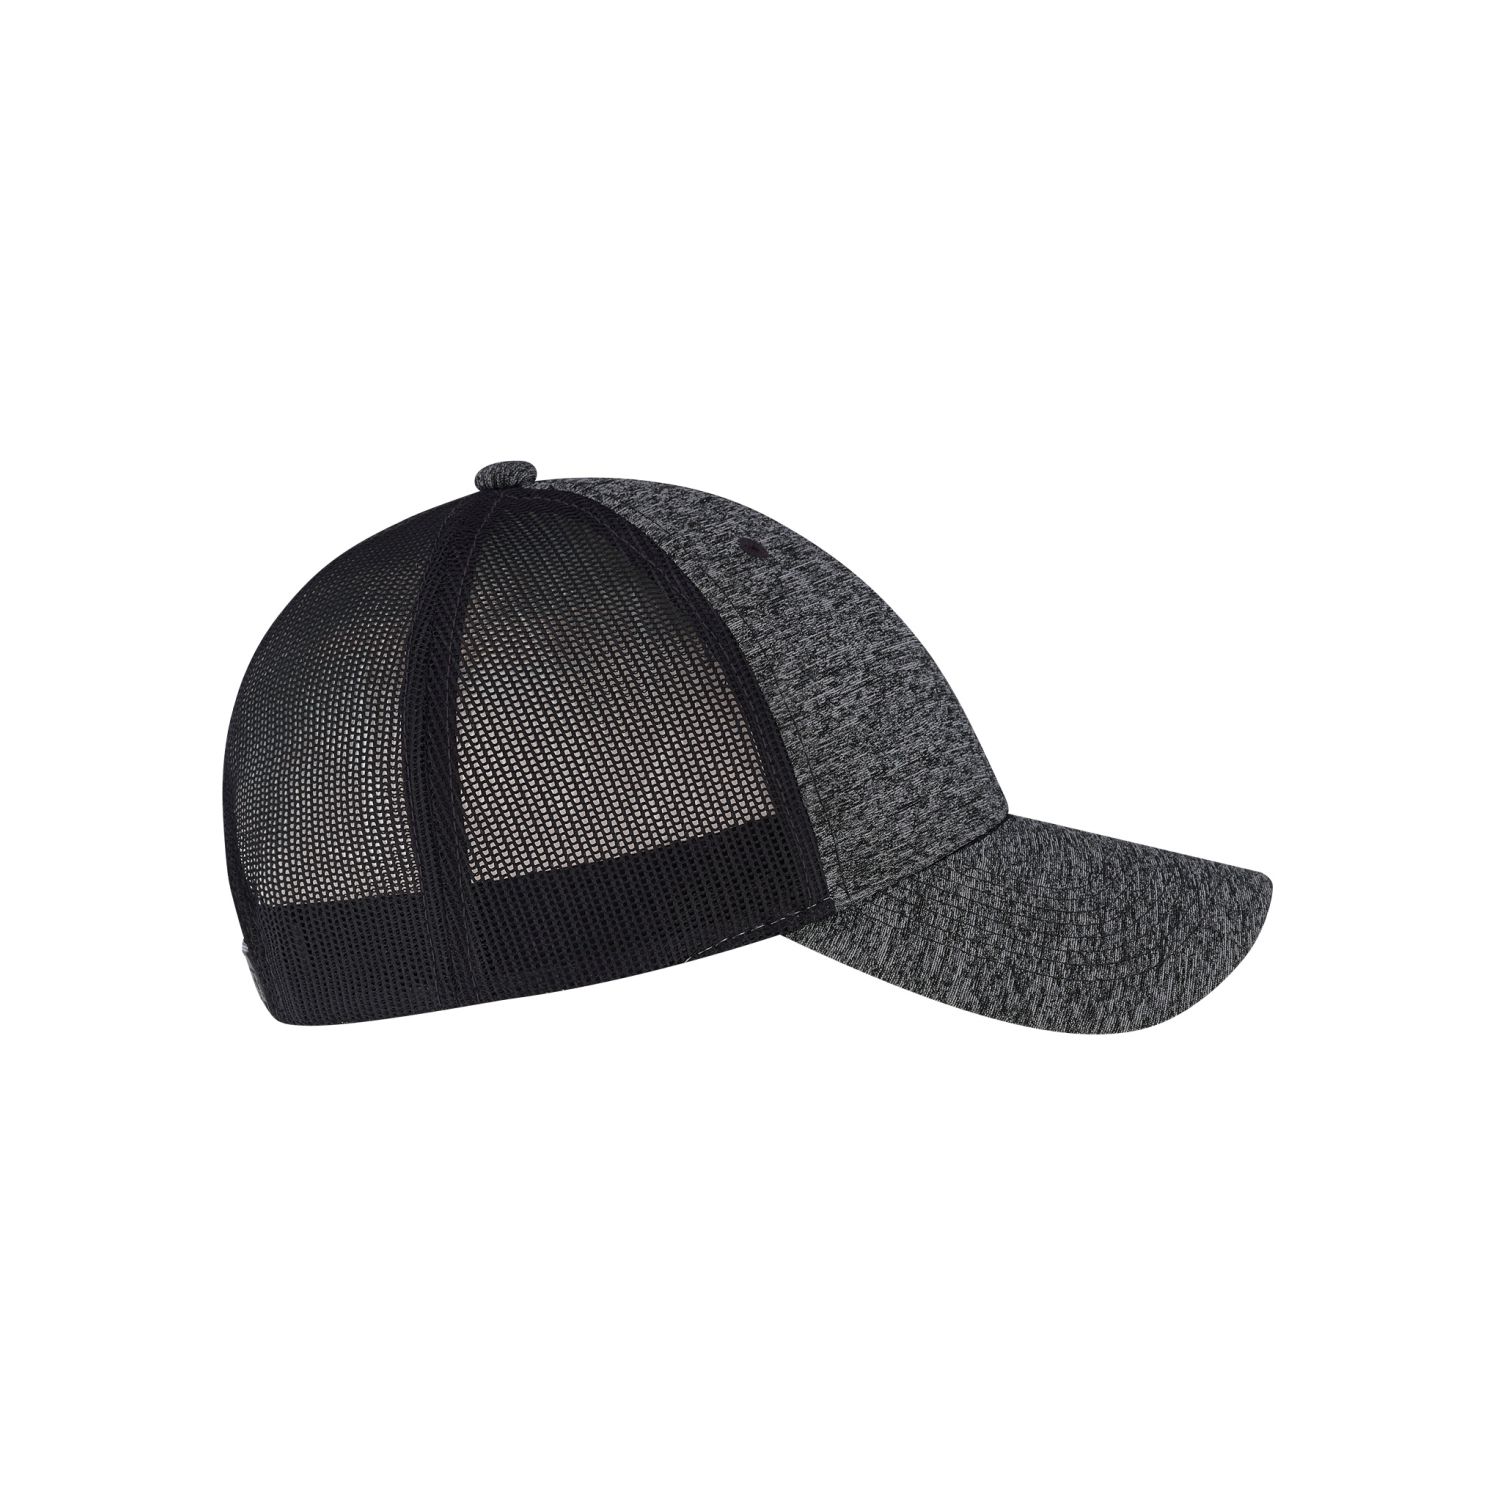 AJM 6-Panel Constructed Full-Fit Hat (Mesh Back) #5H647M Black Side